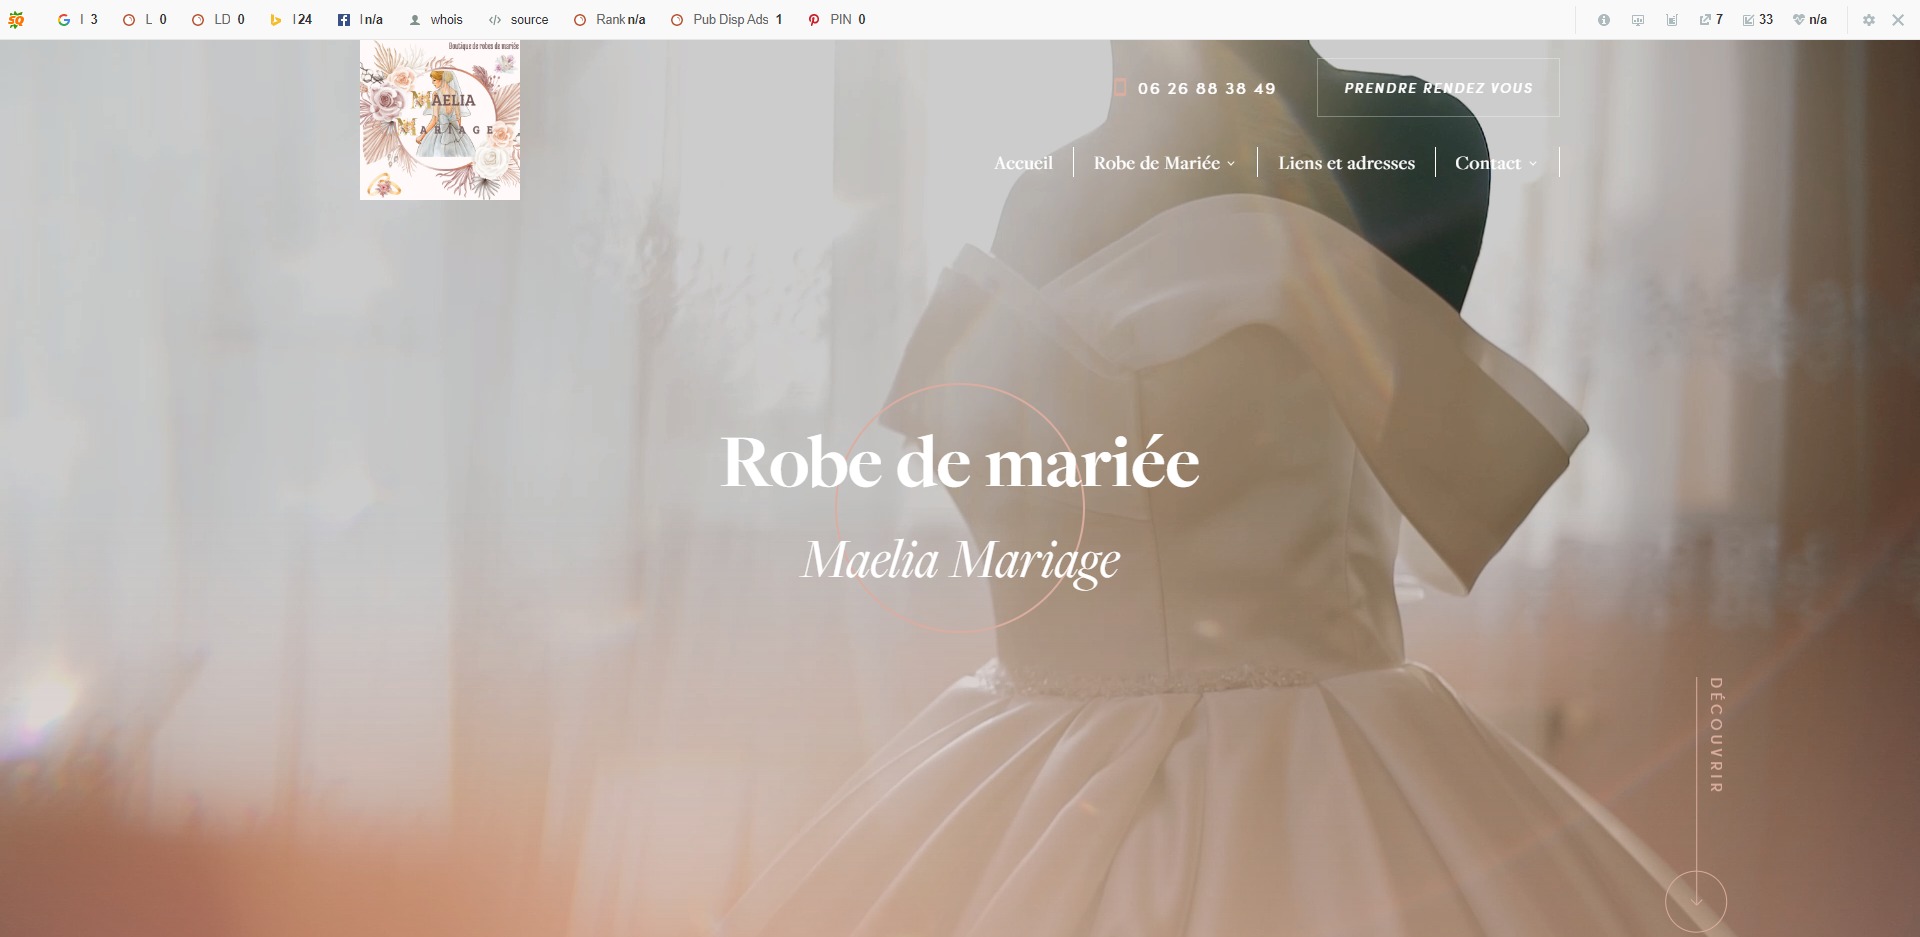 Création d’un site web pour la boutique de mariée Maelia Mariage à Plan de Campagne